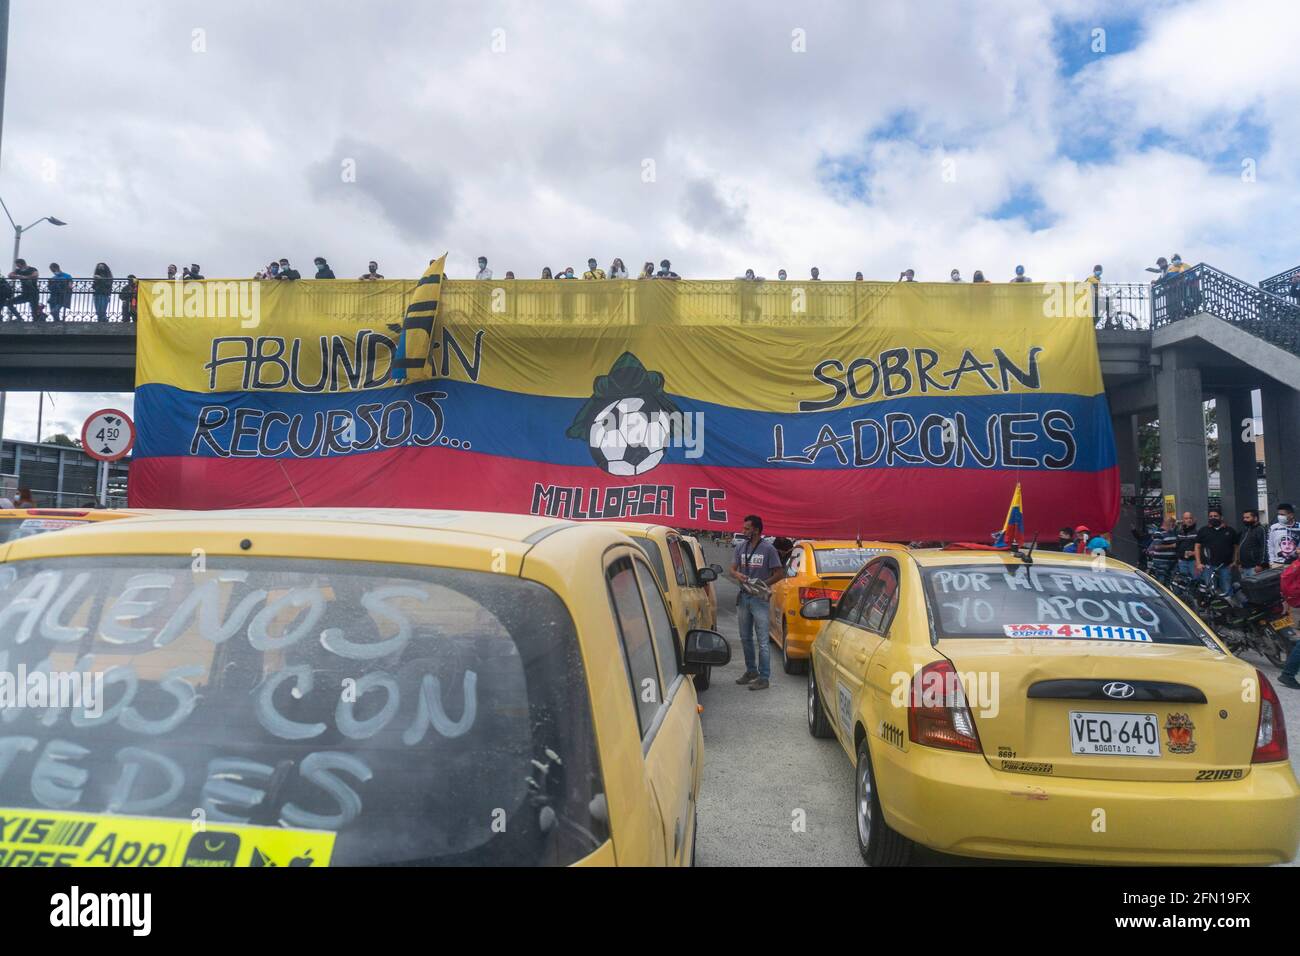 12 mai 2021 : chauffeurs de taxi soutenant la grève nationale à Bogota. Crédit : Daniel Garzon Herazo/ZUMA Wire/Alay Live News Banque D'Images